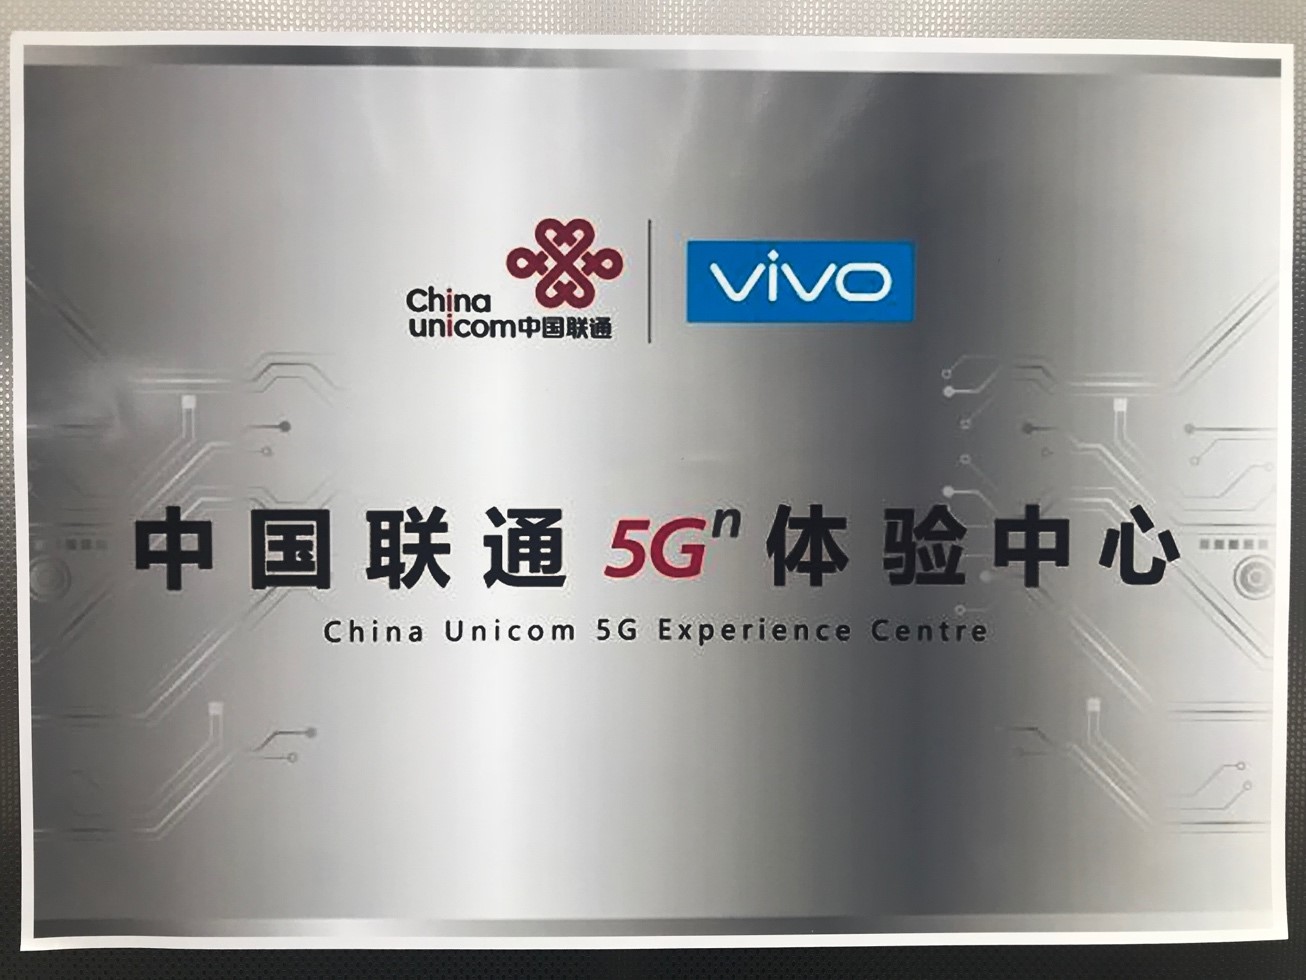 加速5G商用 vivo中国联通联手建立试点体验